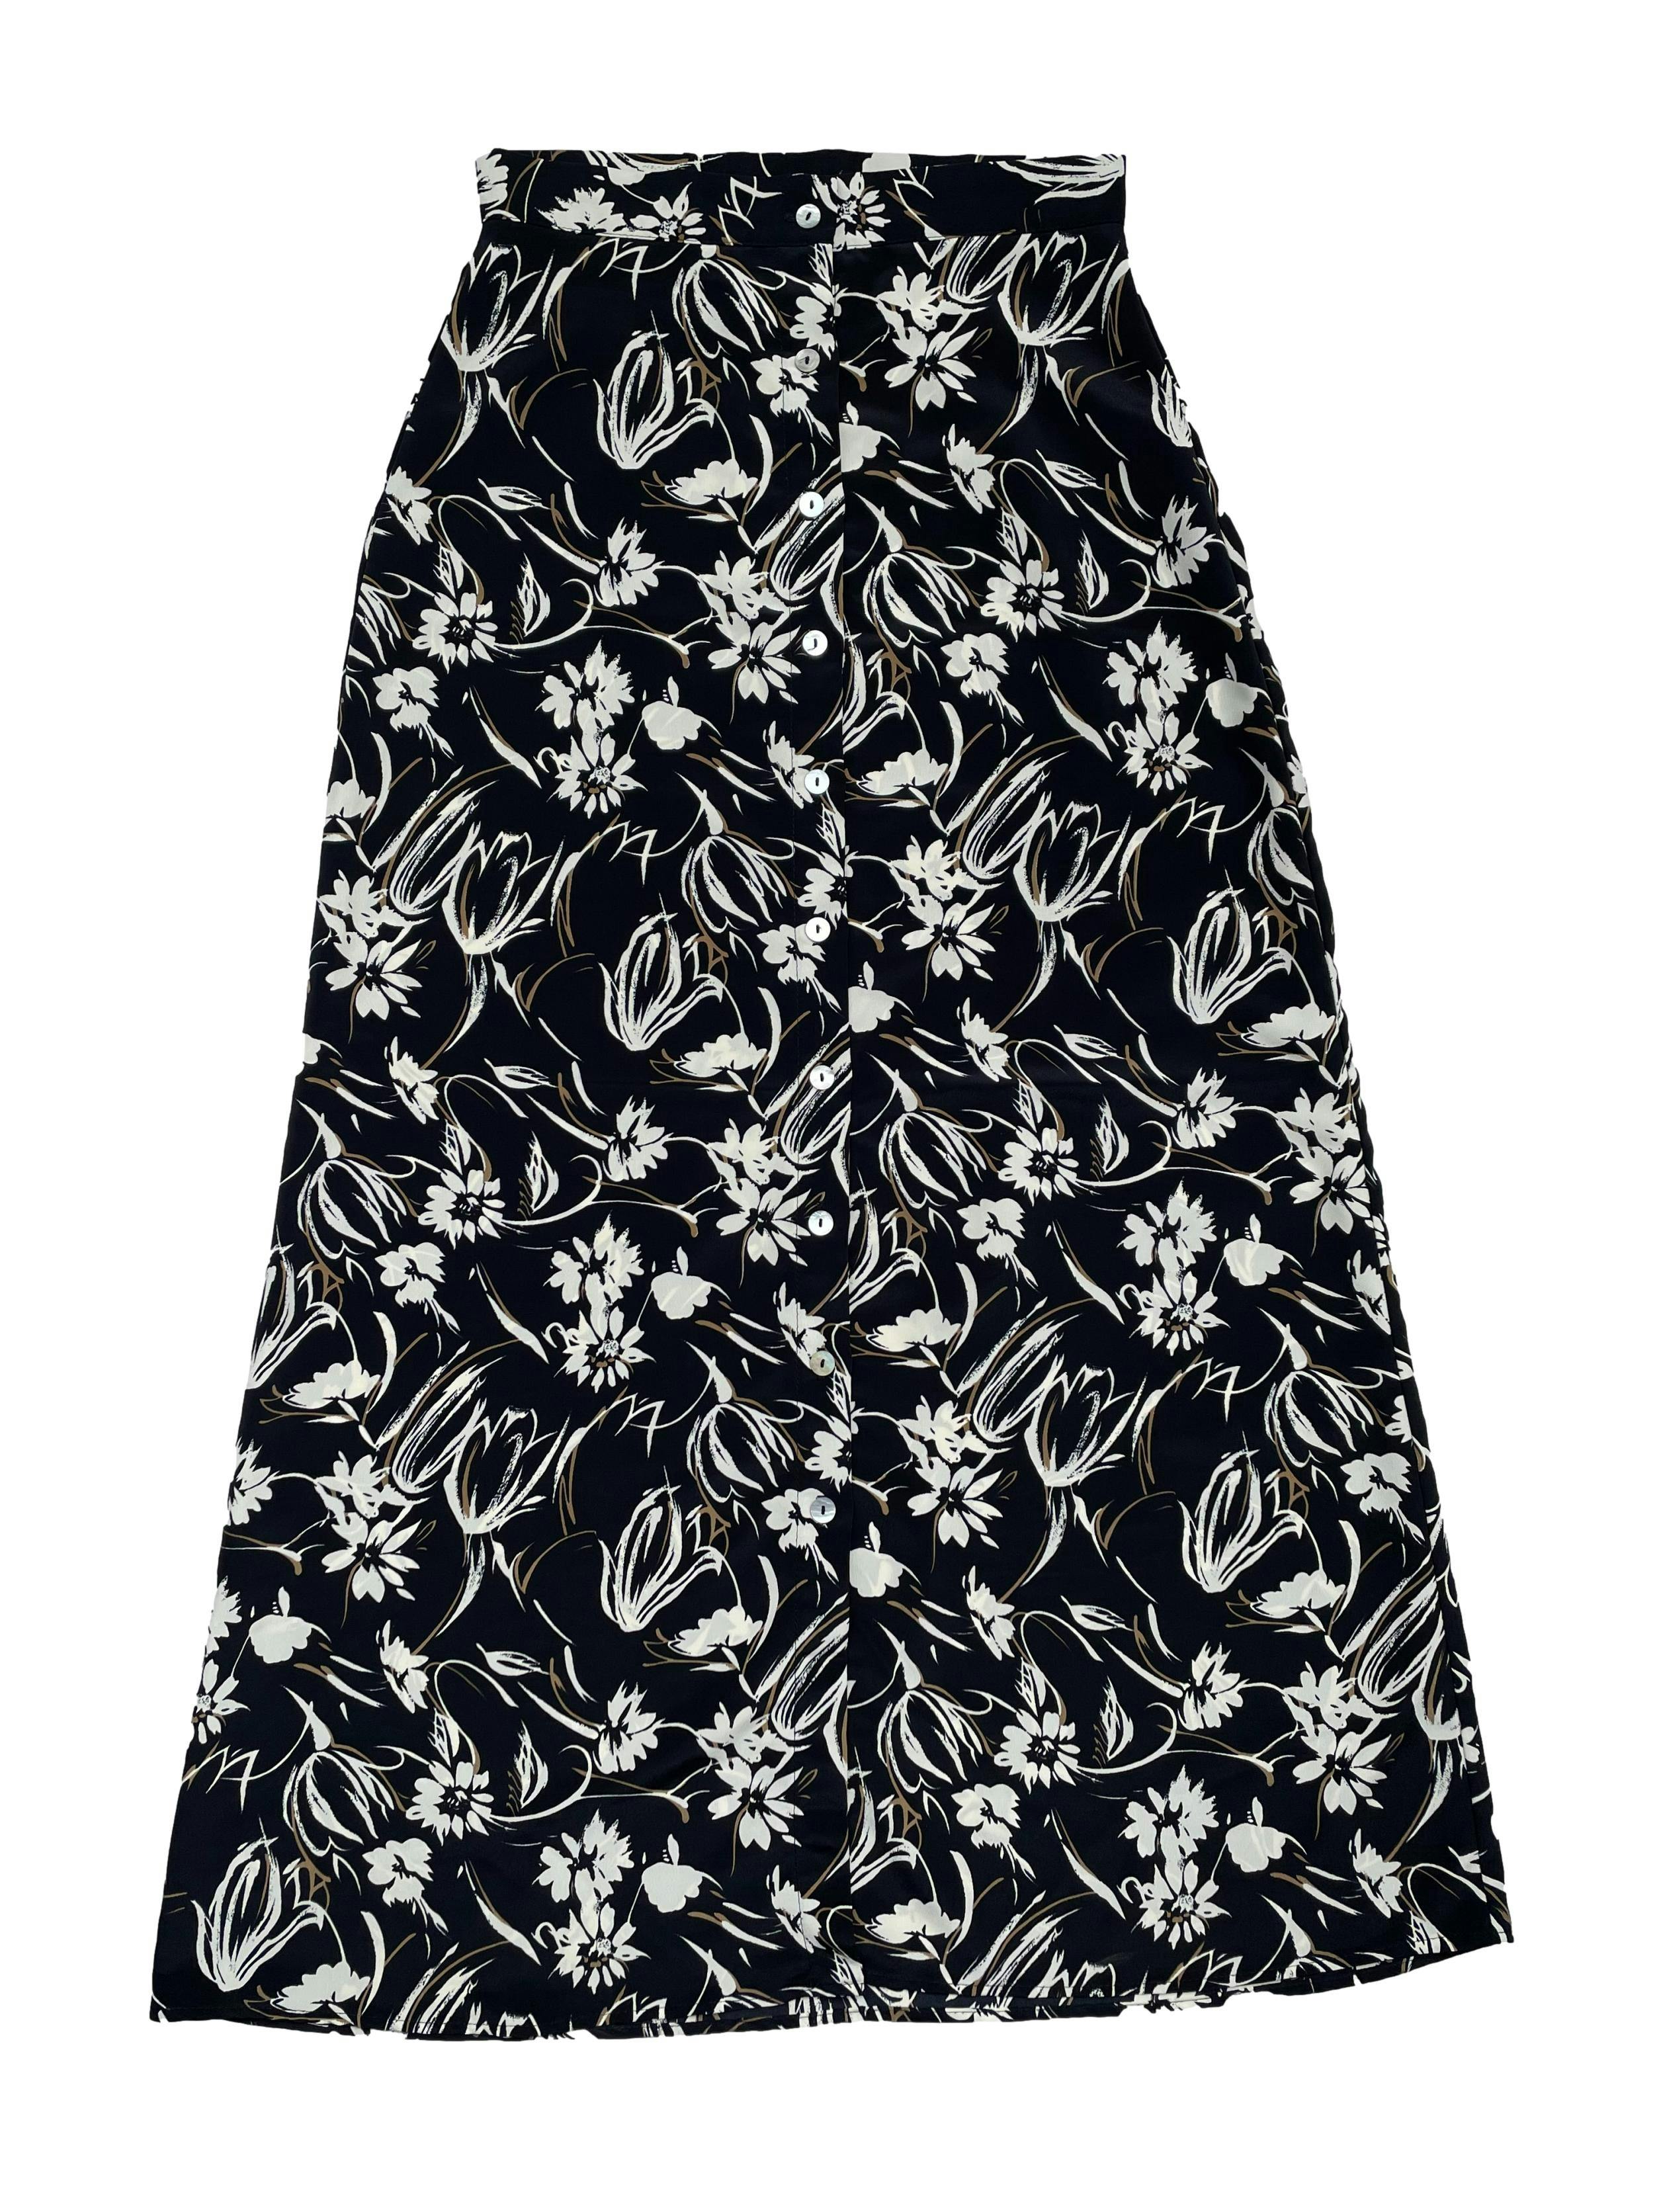 Falda vintage tela plana negra con flores crema y beige, fila de botones nacarados delanteros, corte en A. Cintura 66cm Largo 97cm